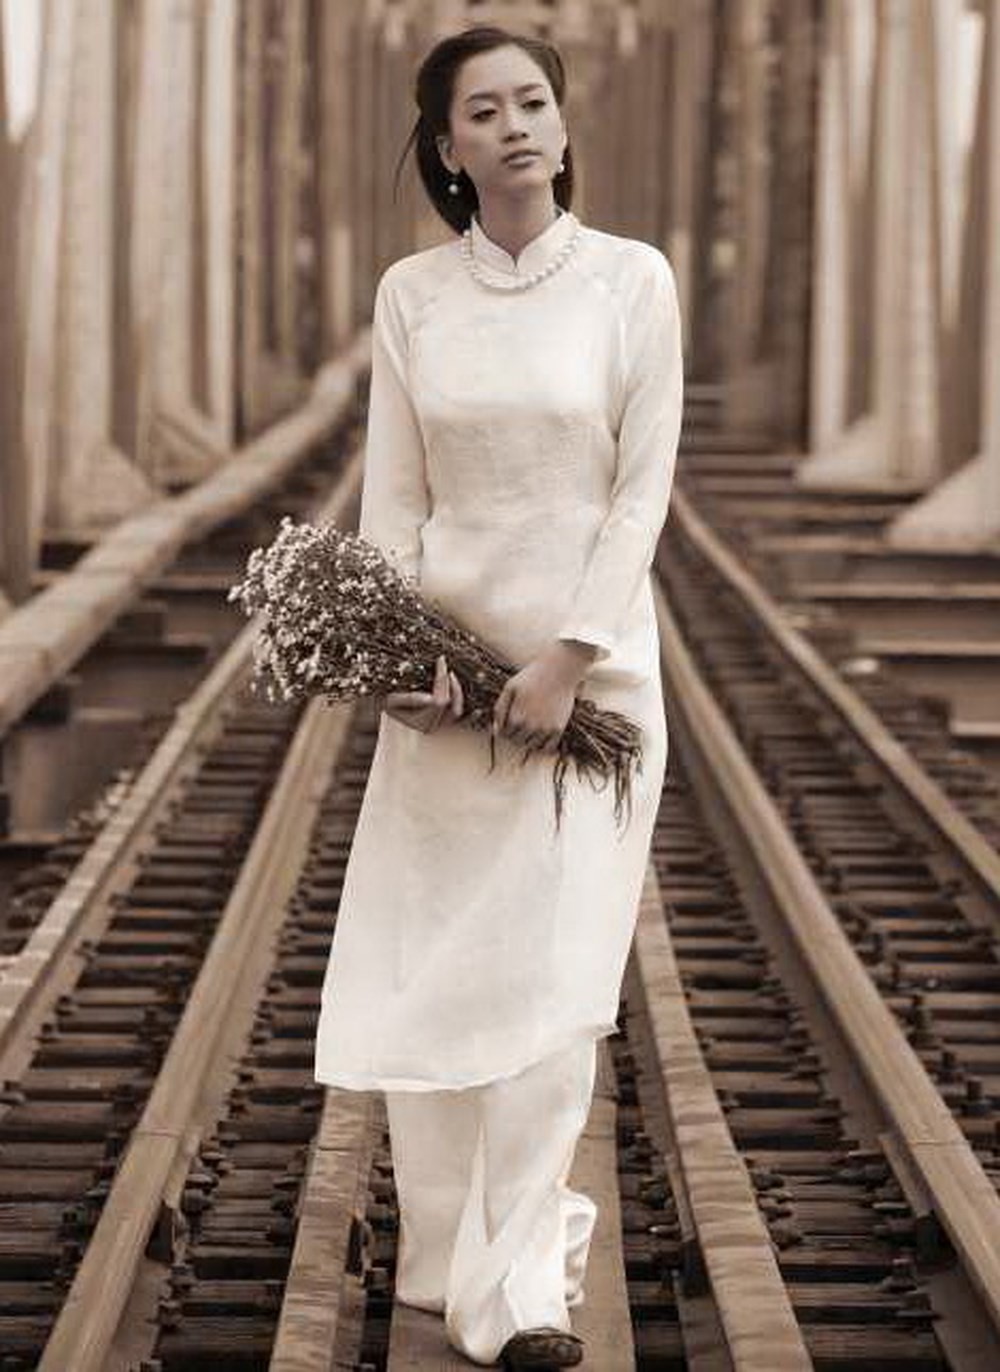 Mẫu áo dài Lê Phổ cổ cao được xem là mẫu nguyên gốc của thiết kế áo dài Việt hiện nay